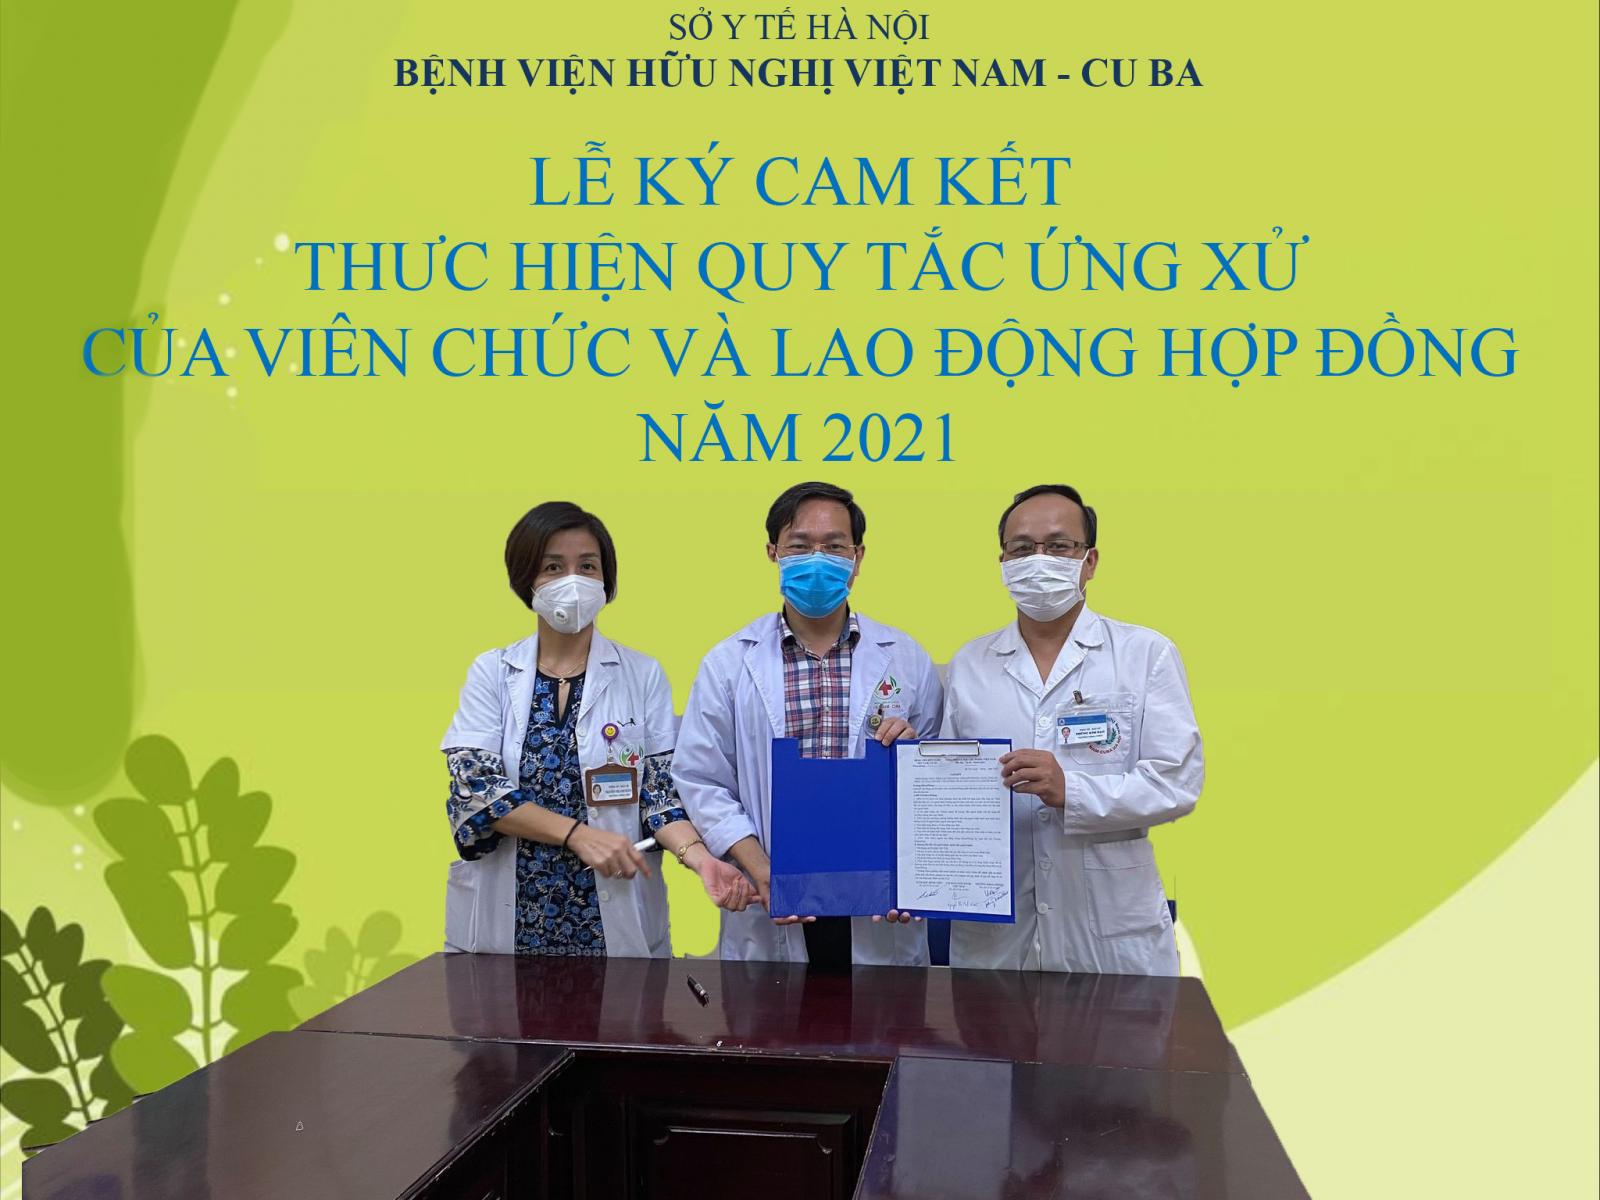 Bệnh viện Hữu nghị Việt Nam-Cuba triển khai lễ ký cam kết Thực hiện quy tắc ứng xử của viên chức và lao động hợp đồng năm 2021.